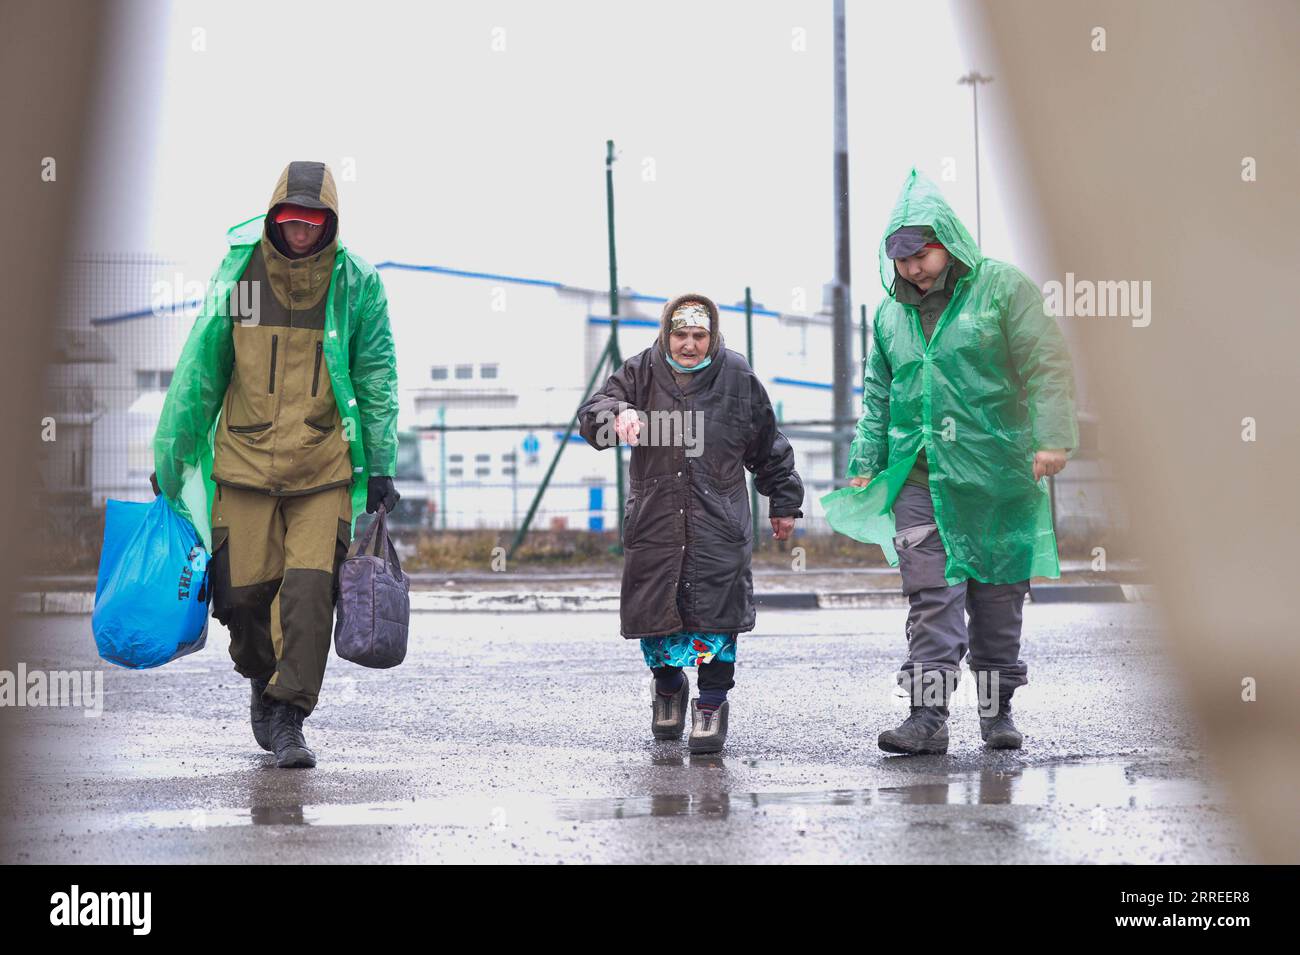 220224 -- ROSTOV, 24 febbraio 2022 -- Una donna del Donbass arriva nella regione di Rostov, Russia, il 24 febbraio 2022. Foto di /Xinhua RUSSIA-ROSTOV-REFUGEE-ARRIVAL AndreyxBok PUBLICATIONxNOTxINxCHN Foto Stock